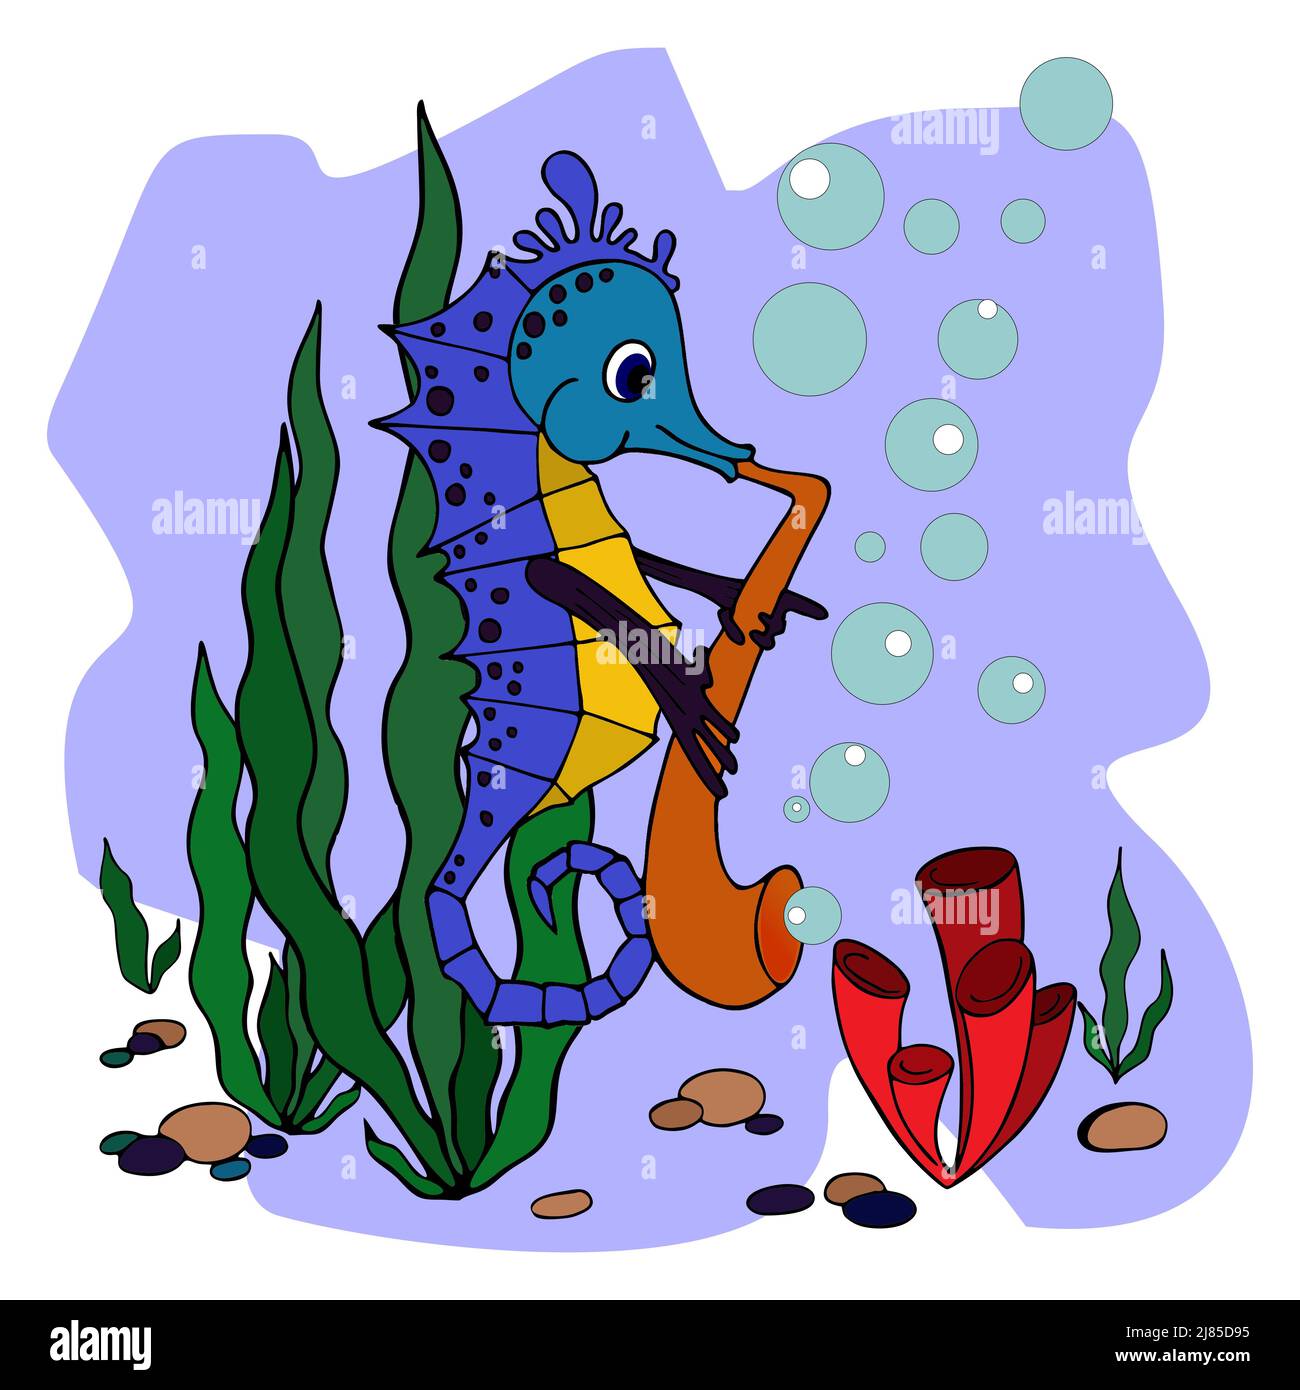 bonita ilustración para los niños caballitos de mar jugando el saxofón, fabuloso dibujo de contorno, gráficos en color, arte Foto de stock